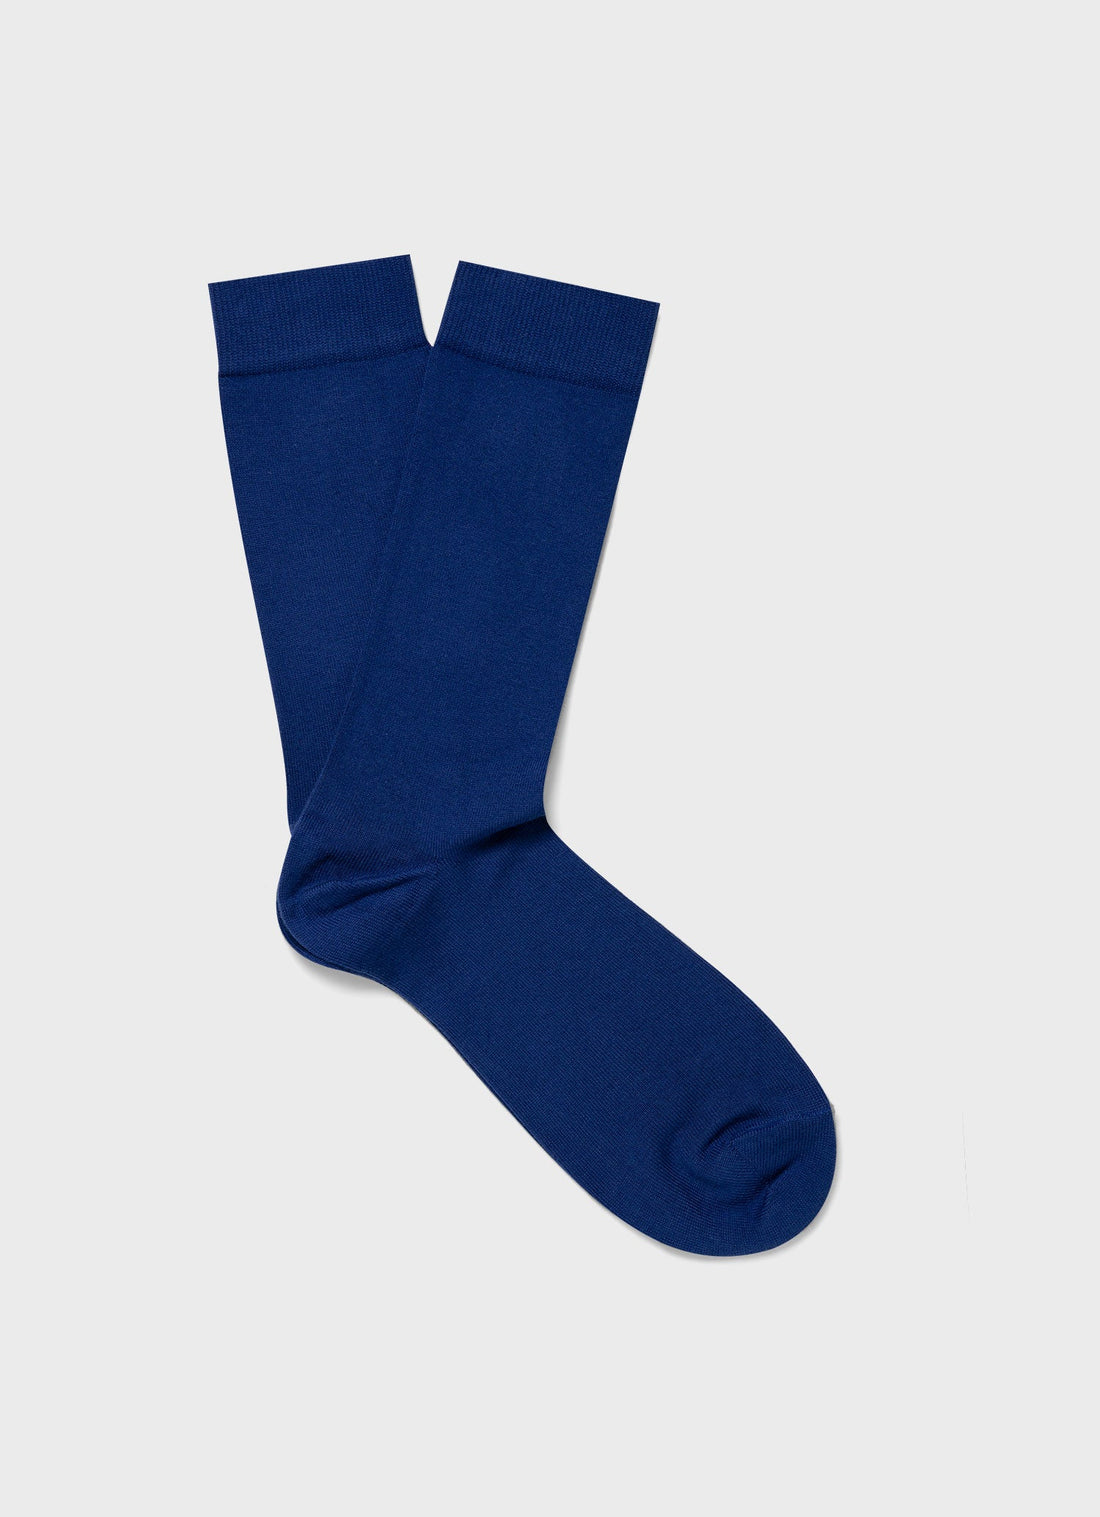 Men's Cotton Socks in Space Blue